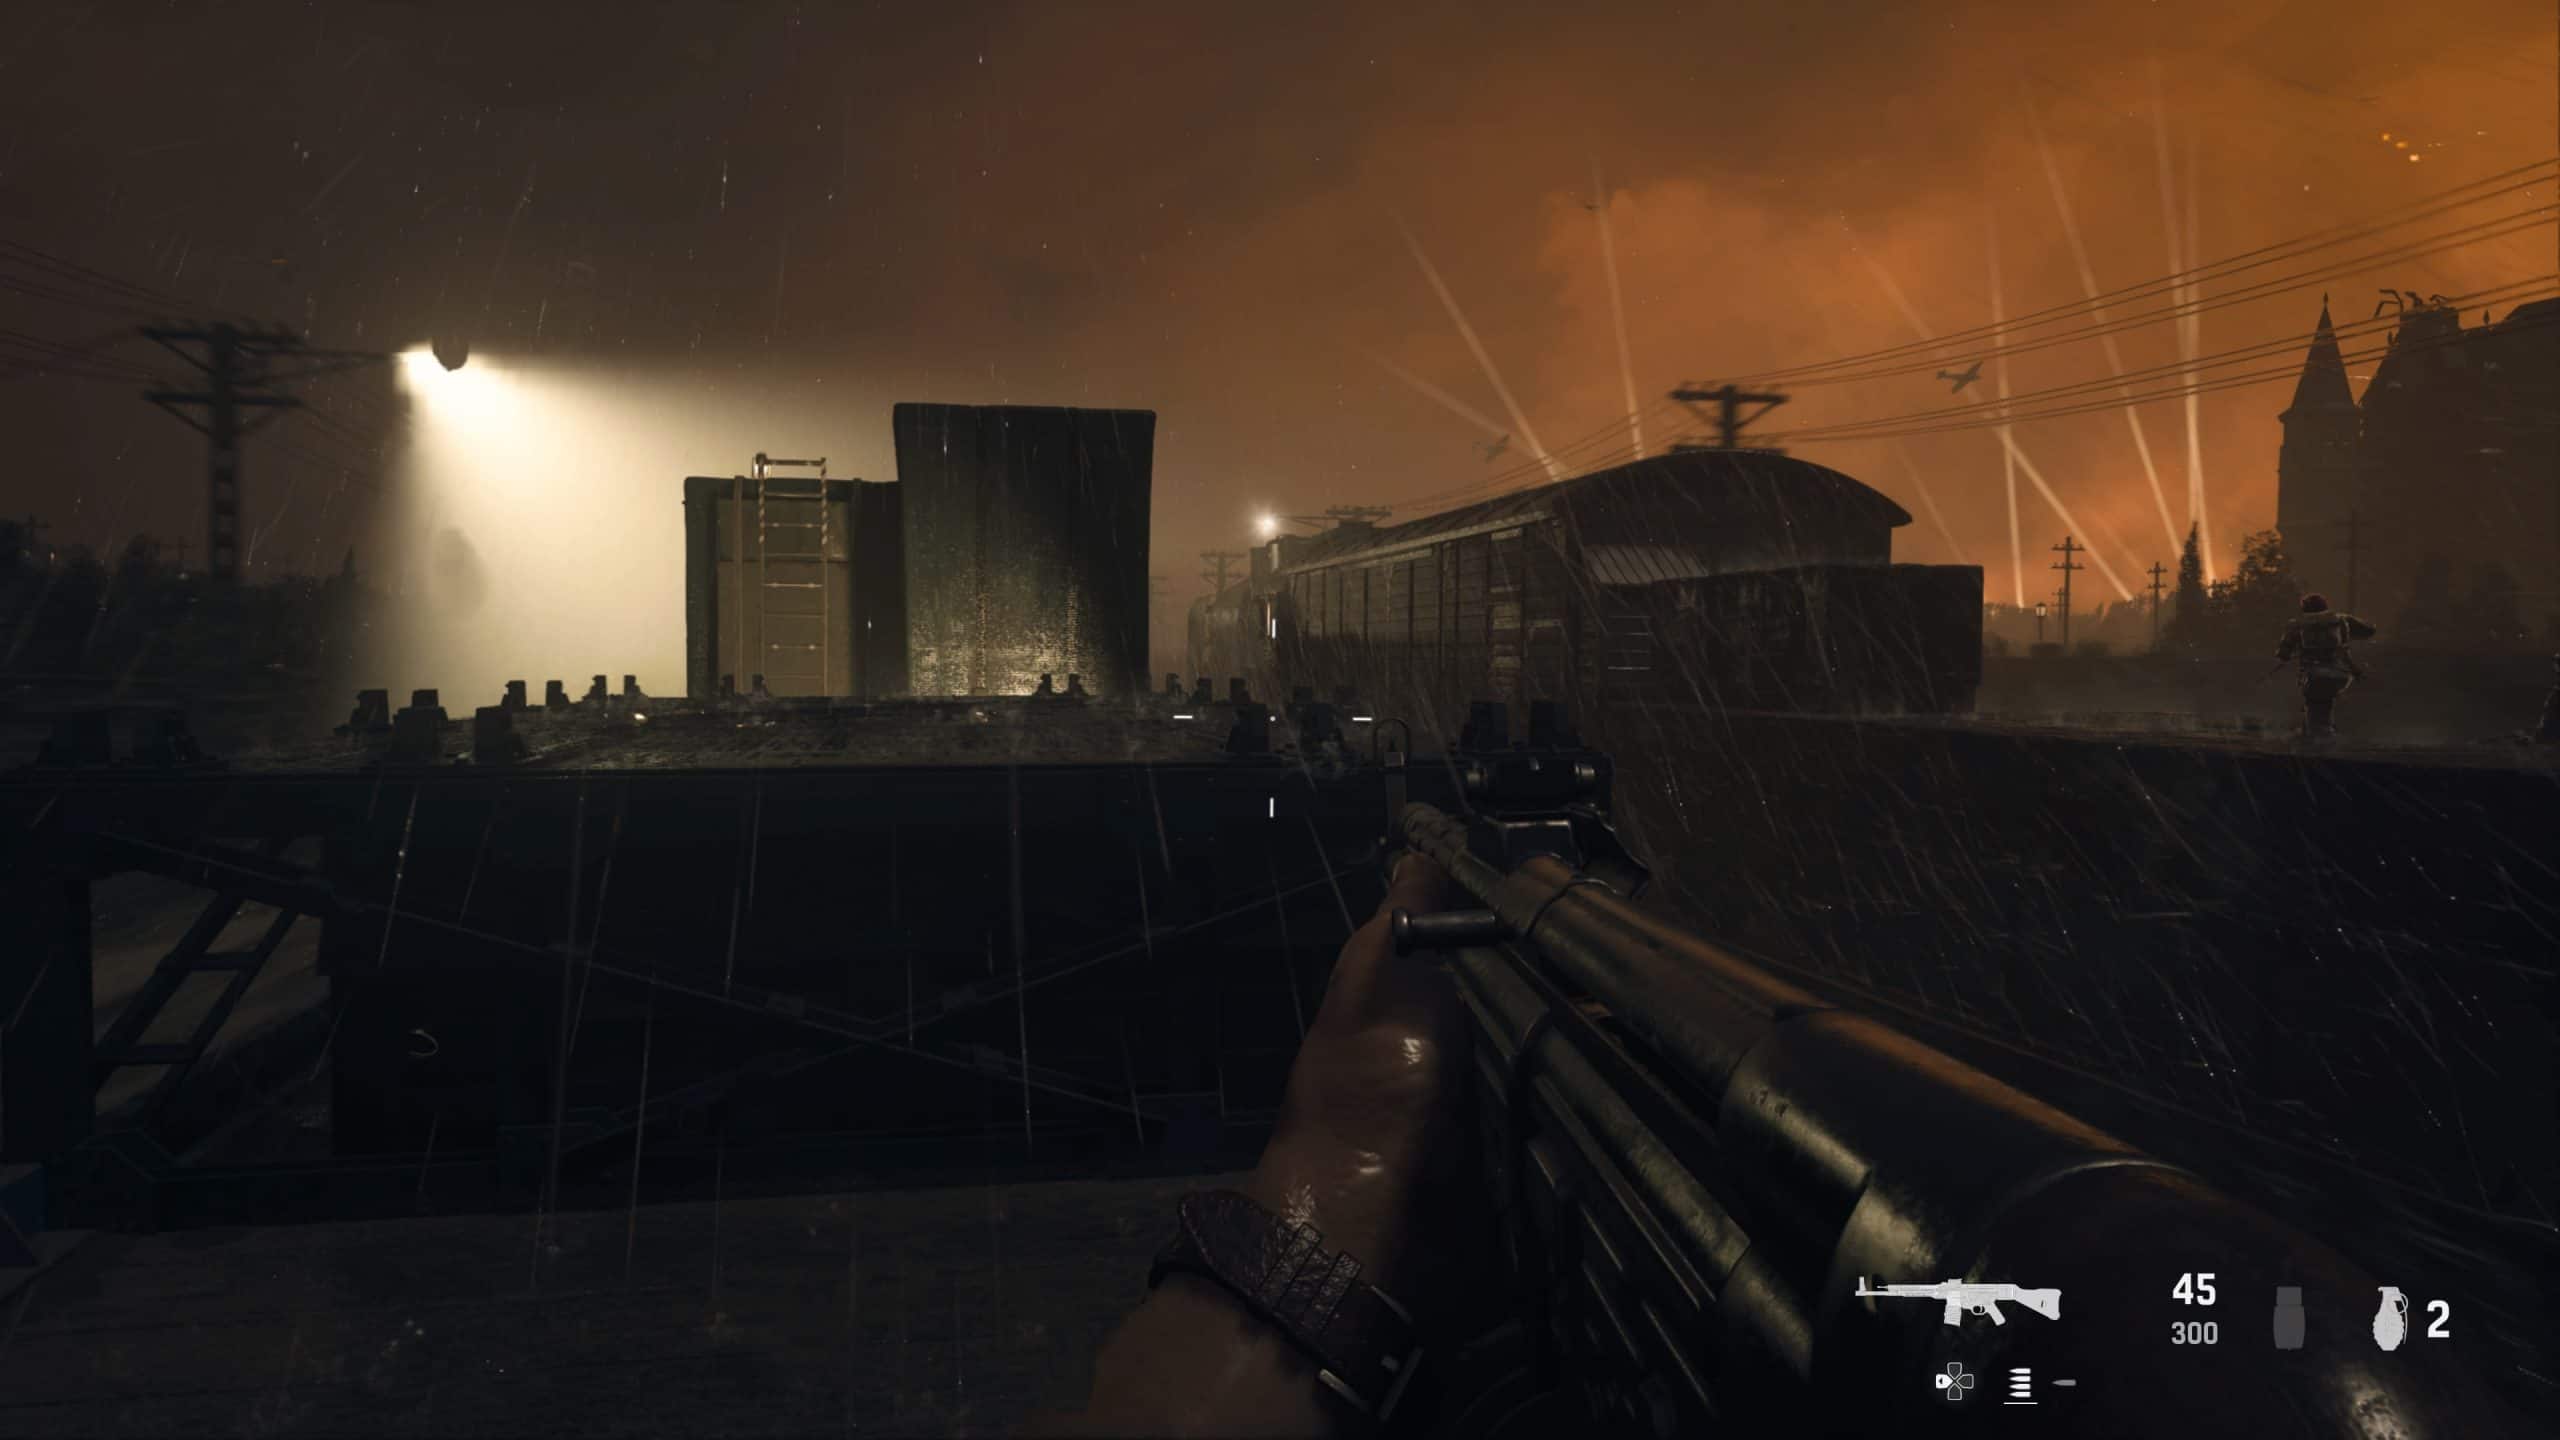 Focado em realismo, Call of Duty: Vanguard é ambientado na 2ª